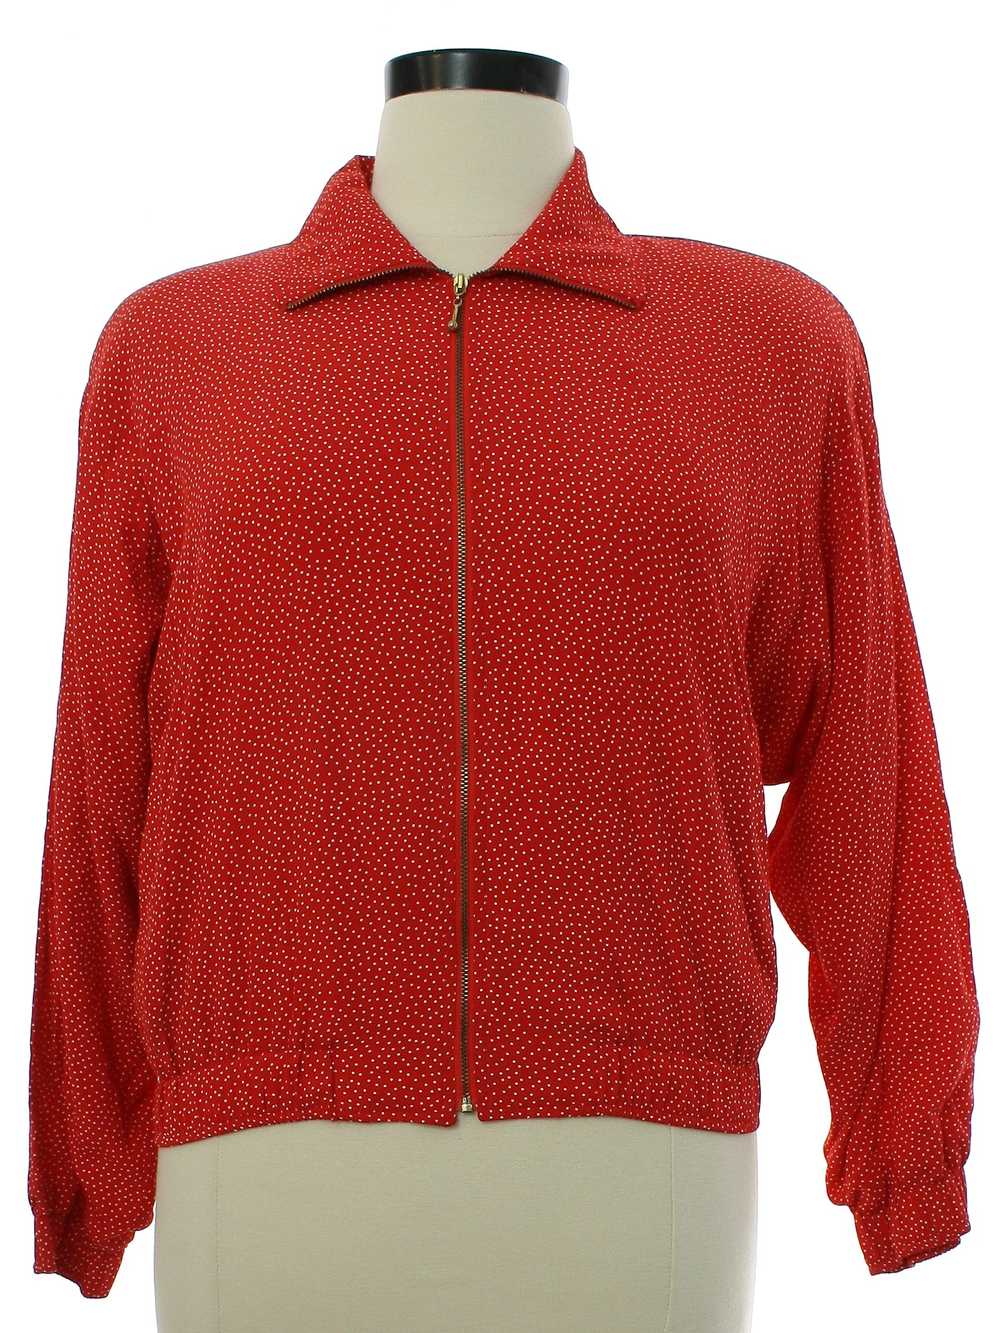 1980's Hanasport Womens Zip Jacket - image 1